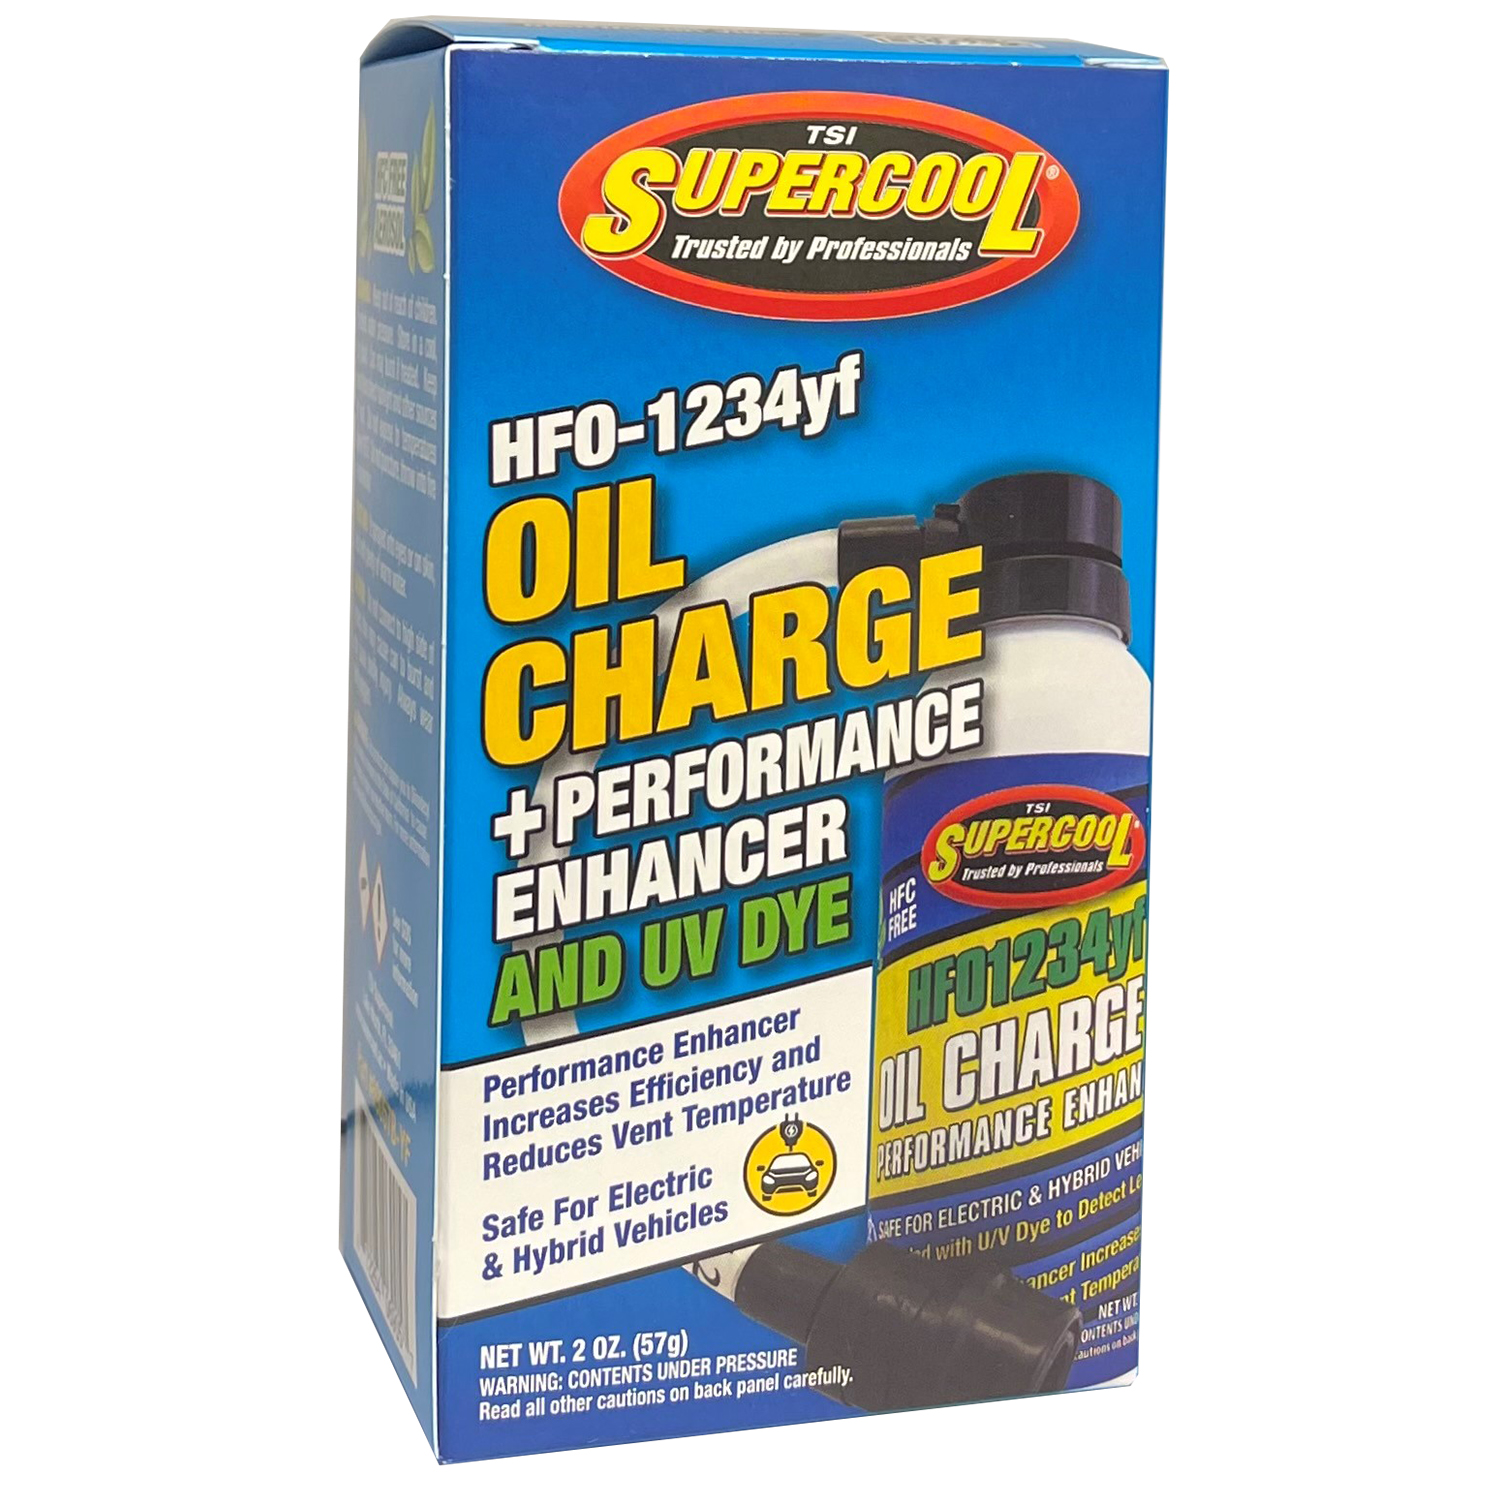 1234yf Ölfüllung mit Performance Enhancer & U/V Dye mit Applikatorschlauch in Retail Box